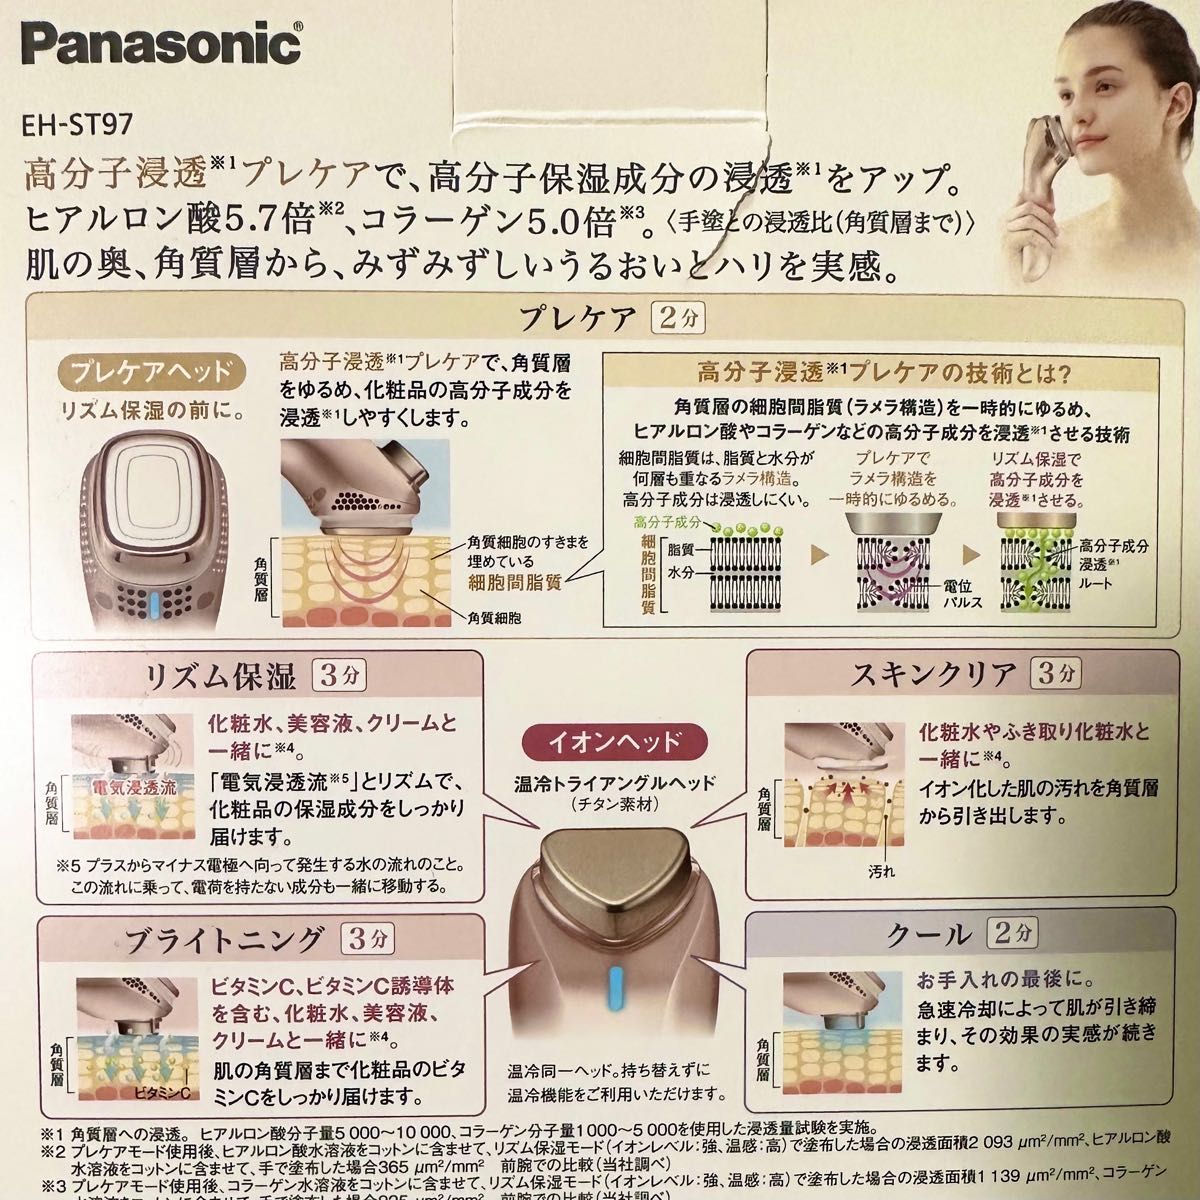 【美品】Panasonic 導入美容器 イオンエフェクター EH-ST97-N ゴールド（高浸透タイプ）